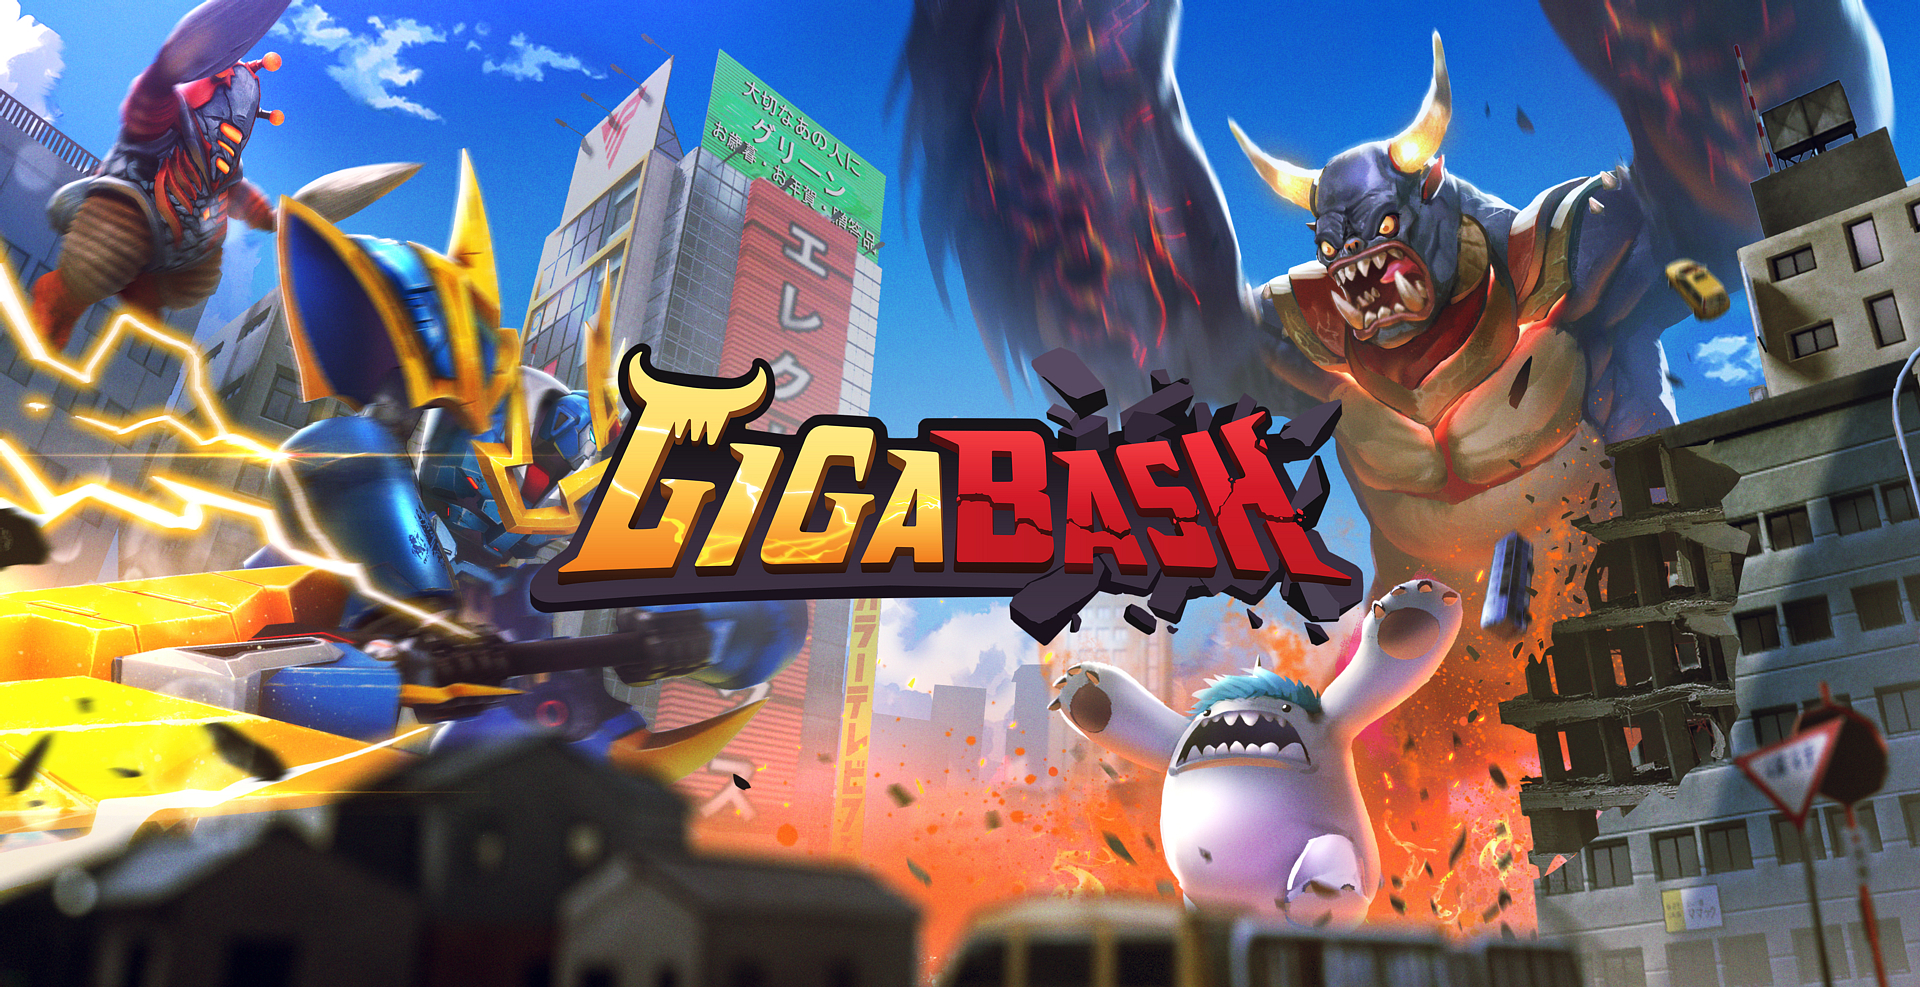 Gigabash の 東京ゲームショウ 19 出展情報が公開 ヒーローや怪獣たちが戦いを繰り広げるアリーナ系の対戦アクションゲーム Nintendo Switch 情報ブログ